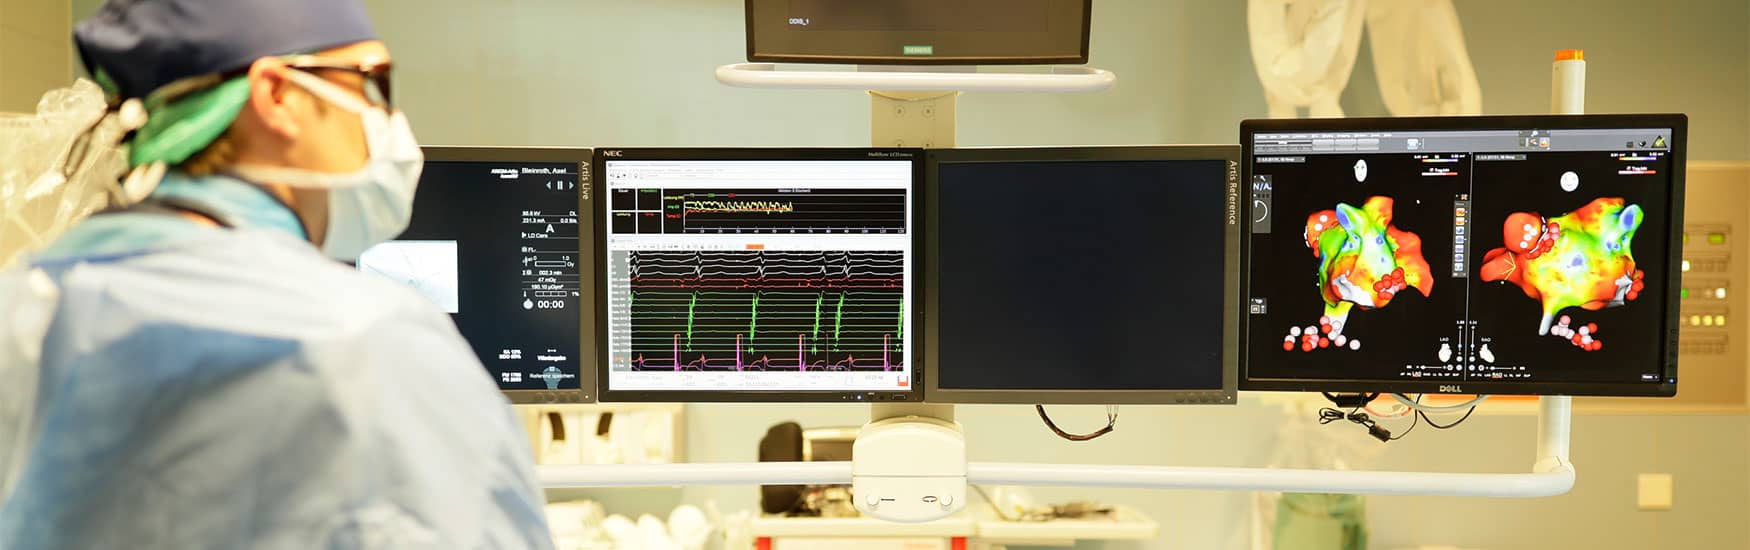 Kardiologe im Herzkatheterlabor blickt auf Monitore